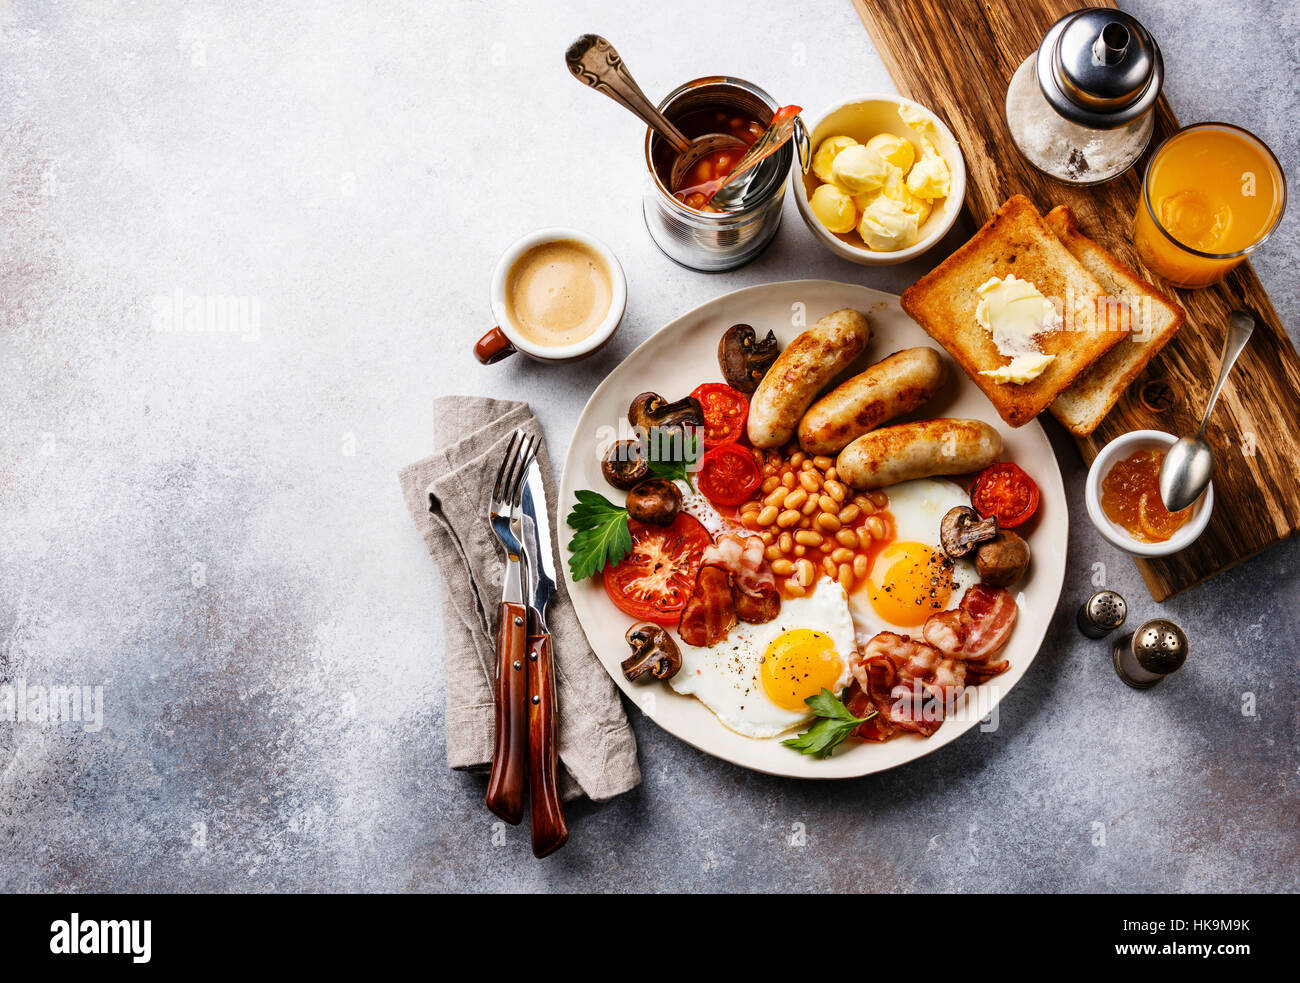 Englisches Frühstück mit Spiegelei, Würstchen, Speck, Bohnen, Toast und ...